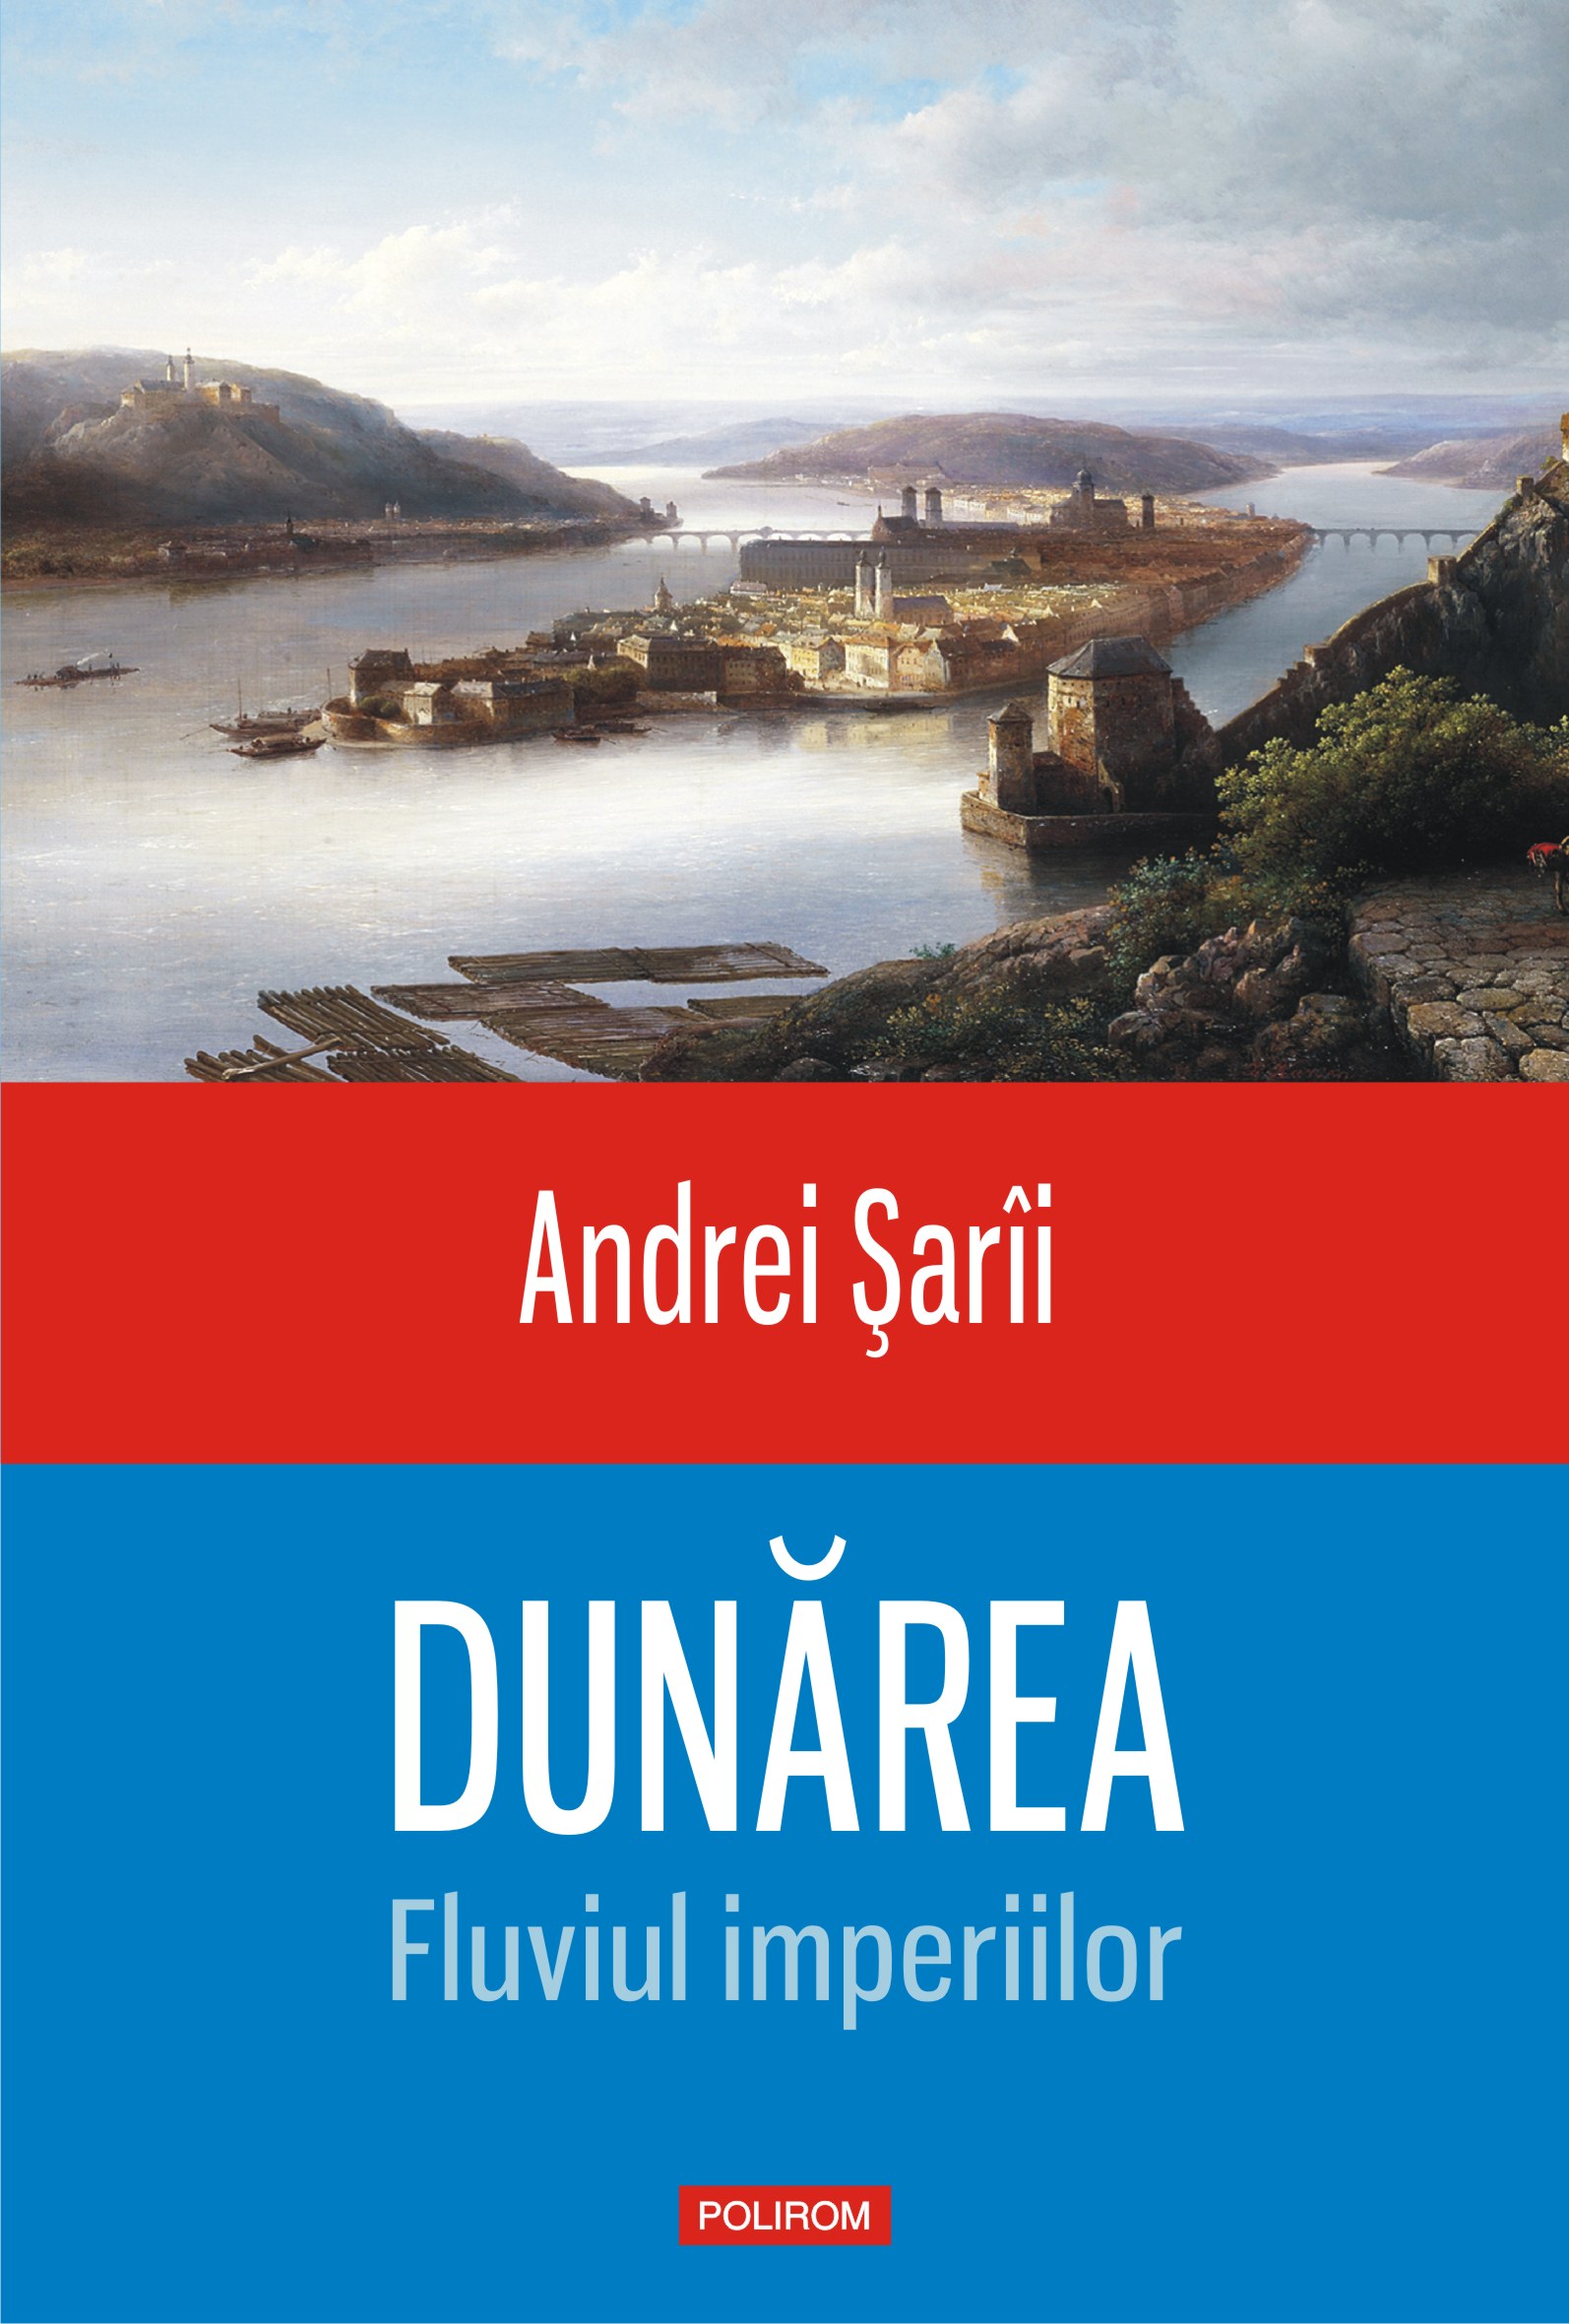 eBook Dunarea. Fluviul imperiilor - Andrei sarii